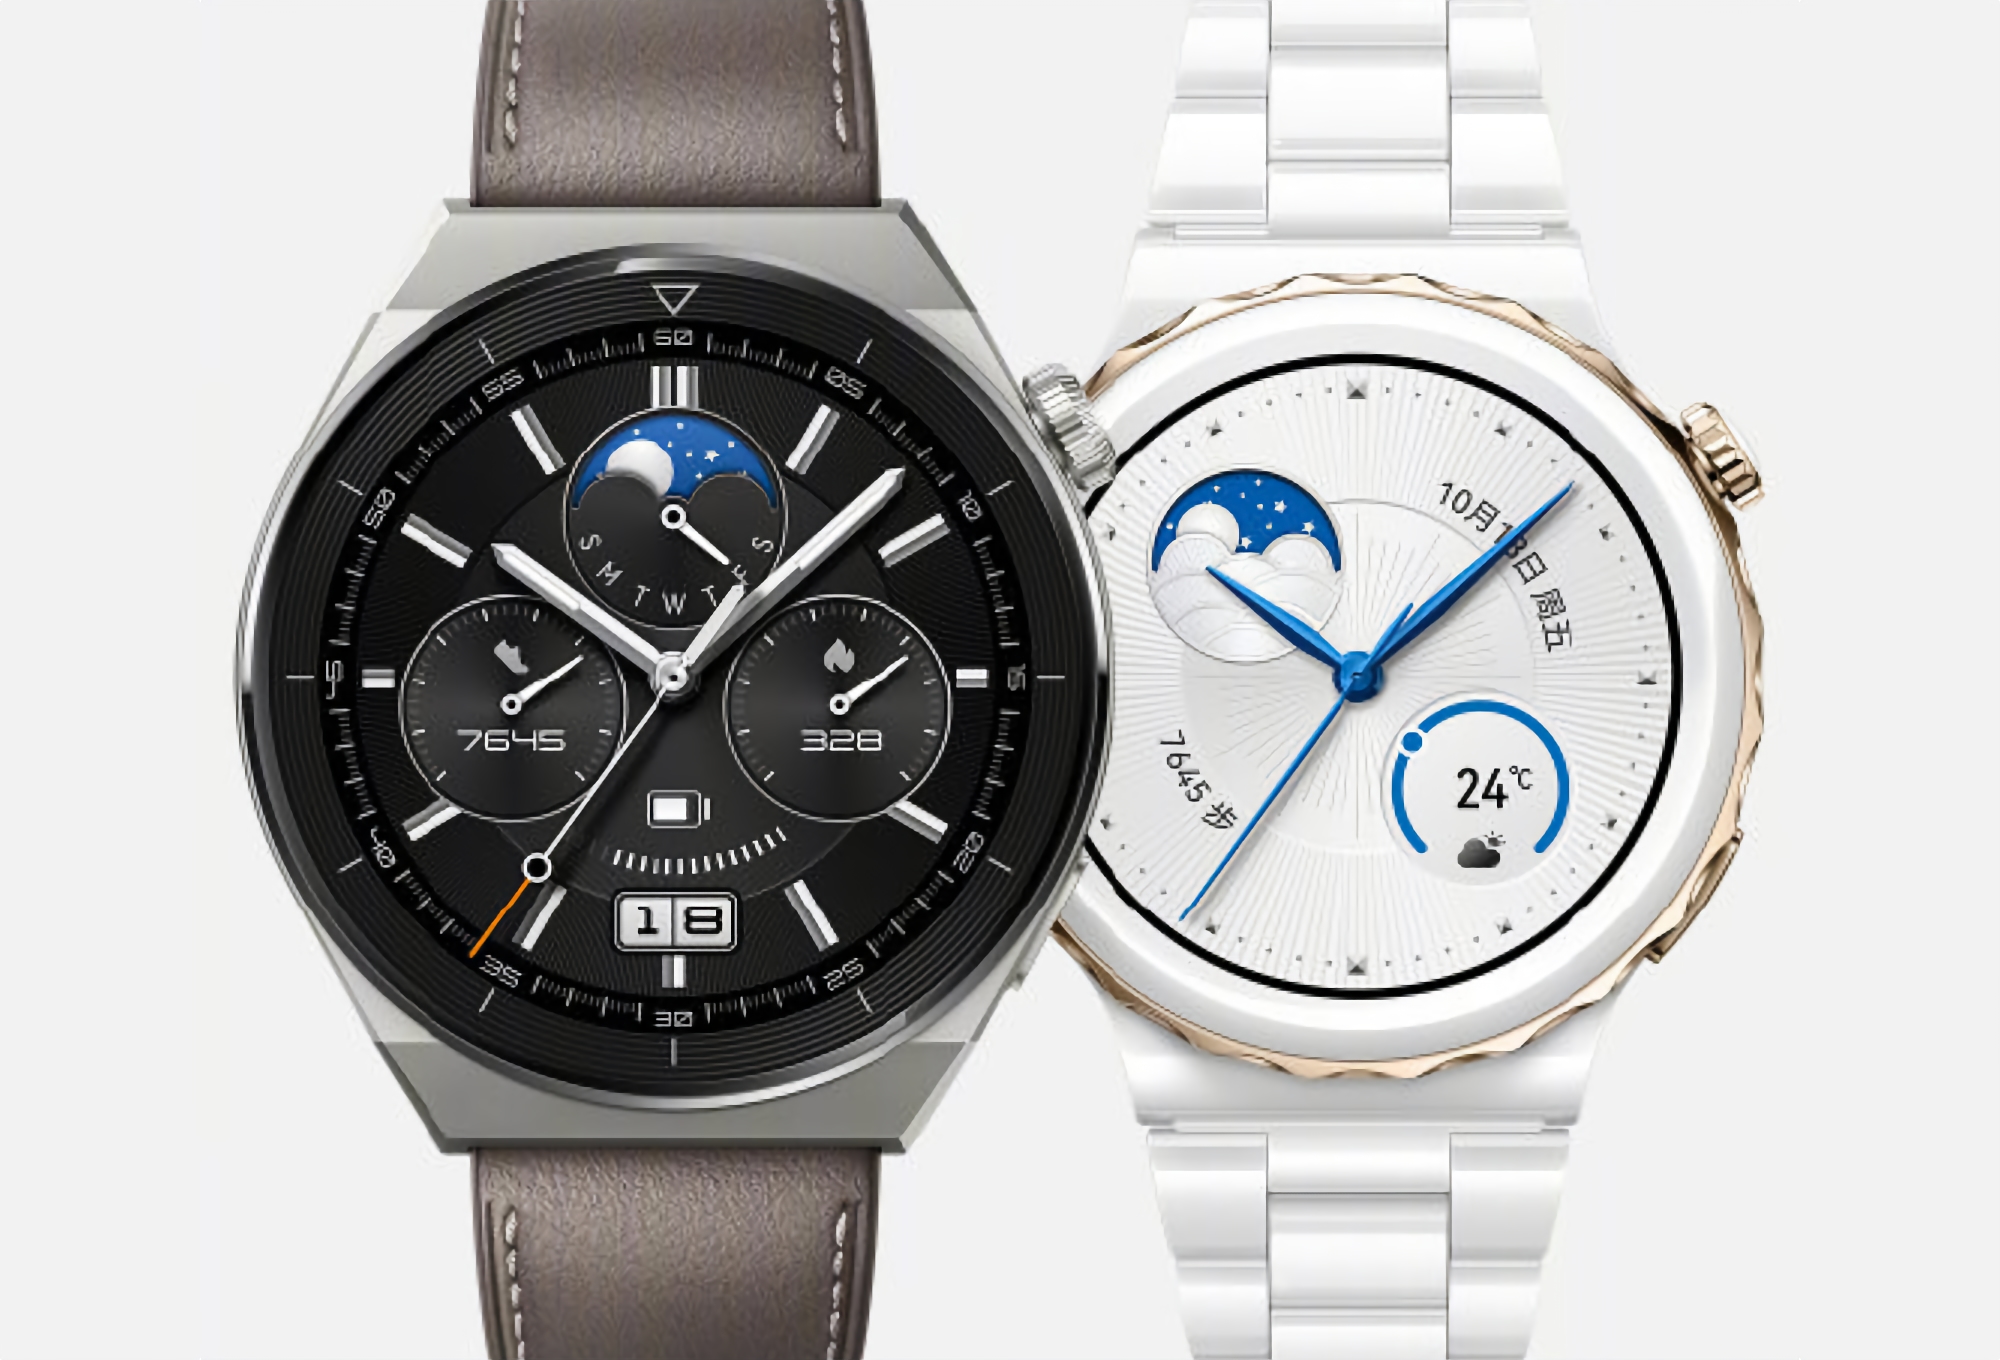 Huawei Watch GT 3 Pro: Smartwatch mit EKG, NFC, Tauchmodus und Autonomie bis zu 14 Tagen für 380 US-Dollar